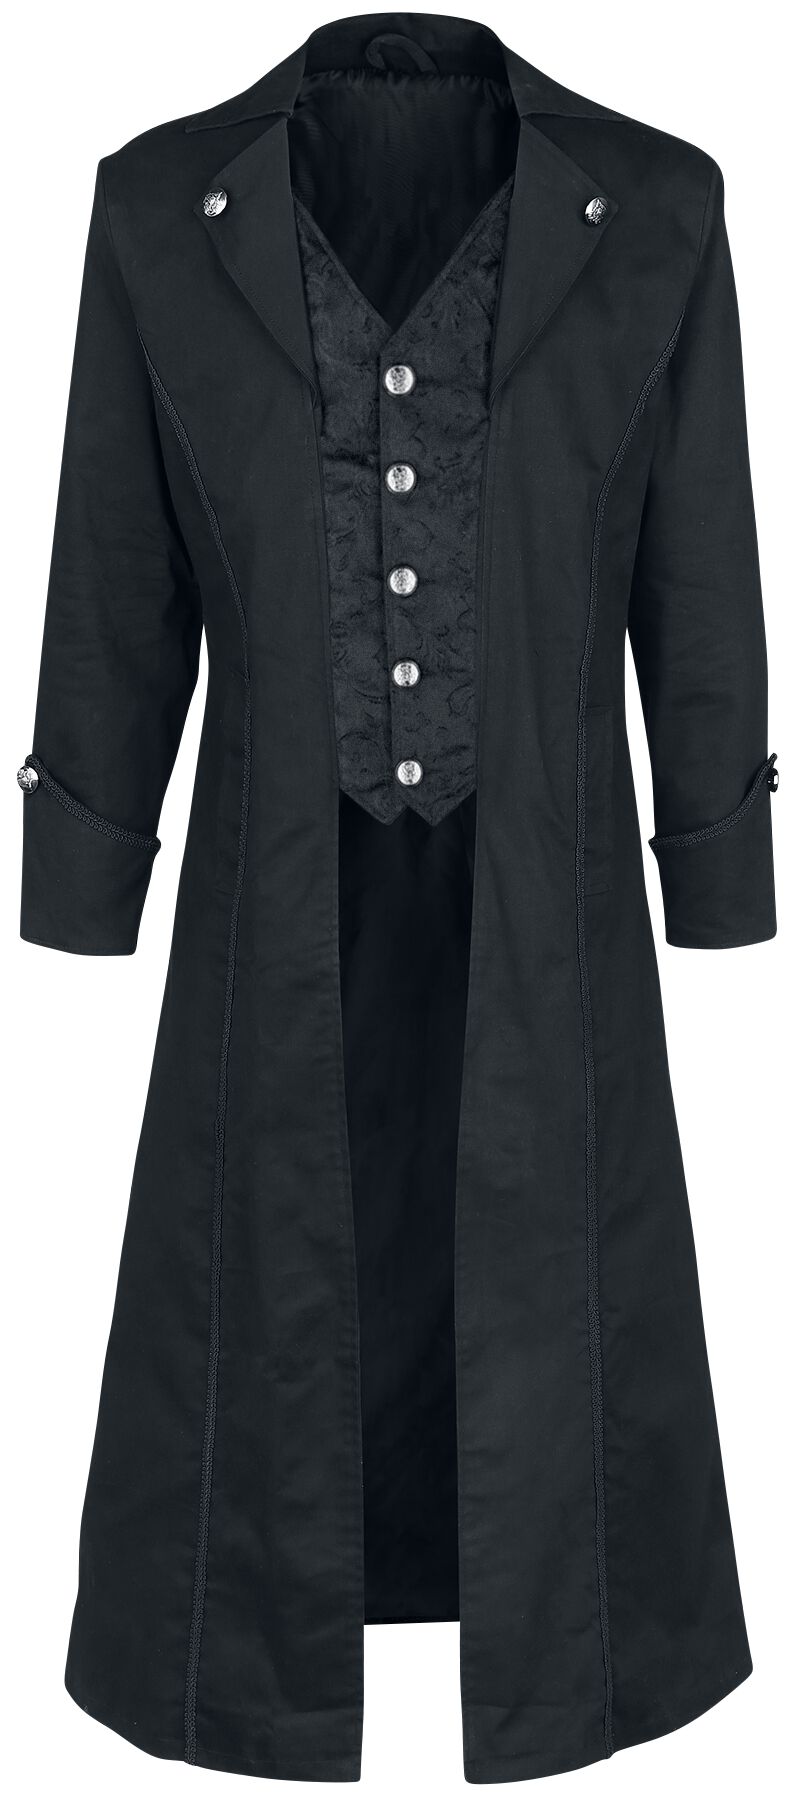 Image of Cappotto in stile militare Gothic di Altana Industries - Dark Brocade Coat - L a XL - Uomo - nero